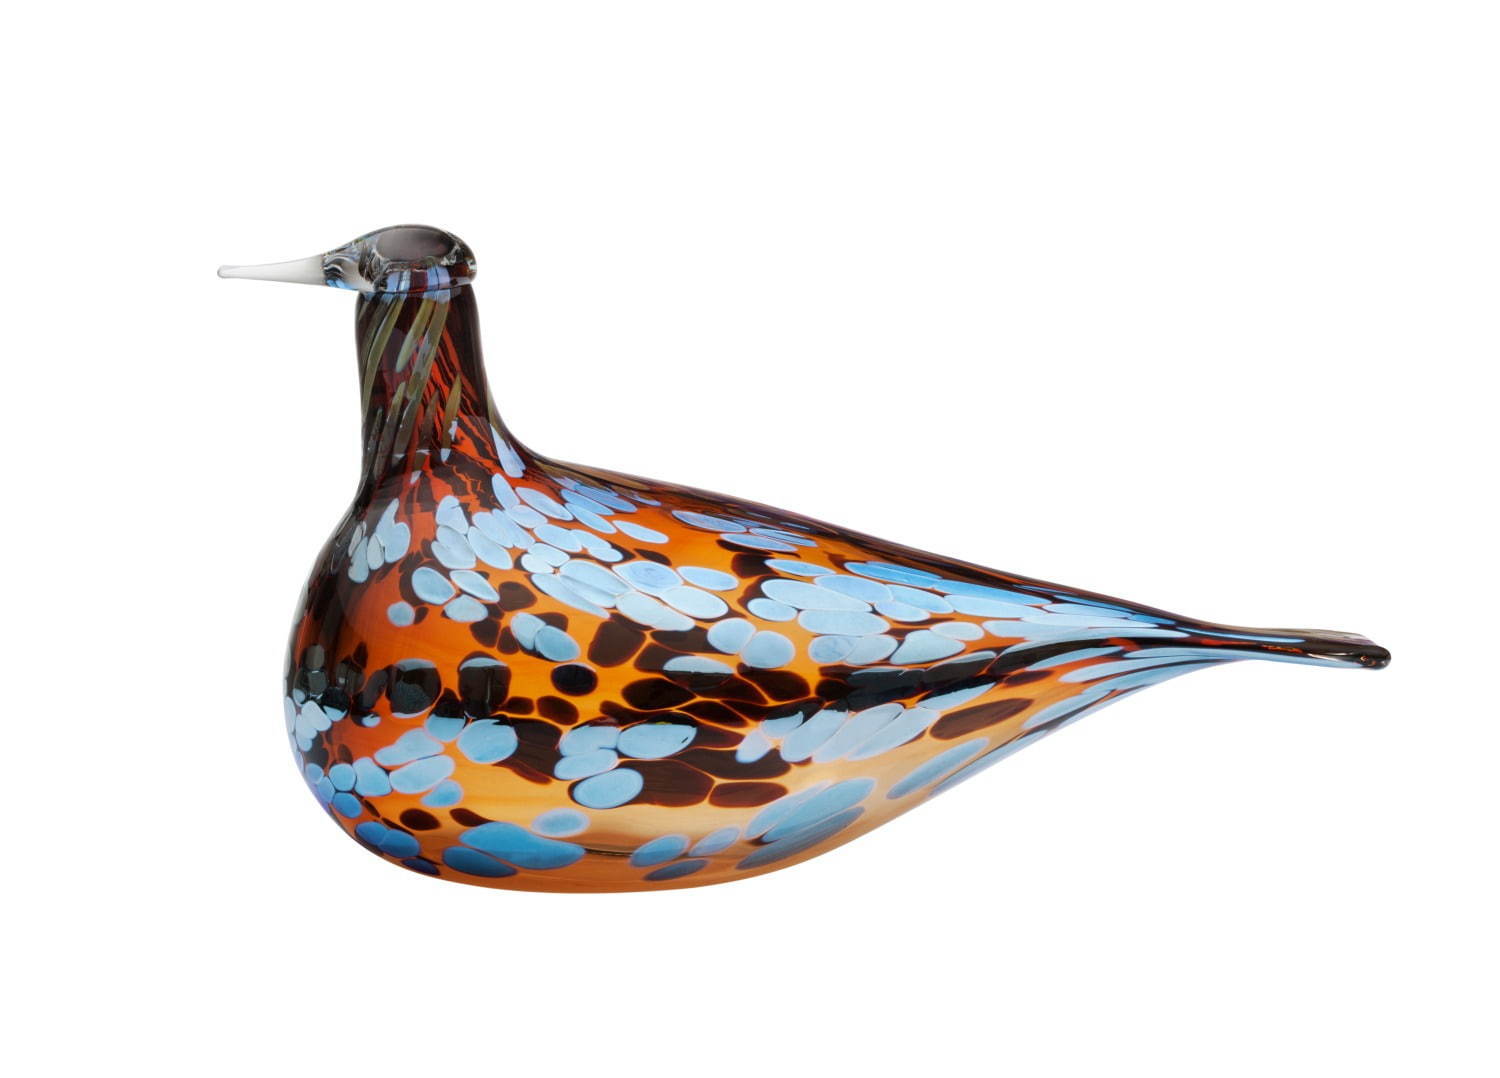 イッタラ「フローラ」新作ガラス食器 - 草花模様を配したタンブラー、手のひらサイズの鳥オブジェも｜写真12